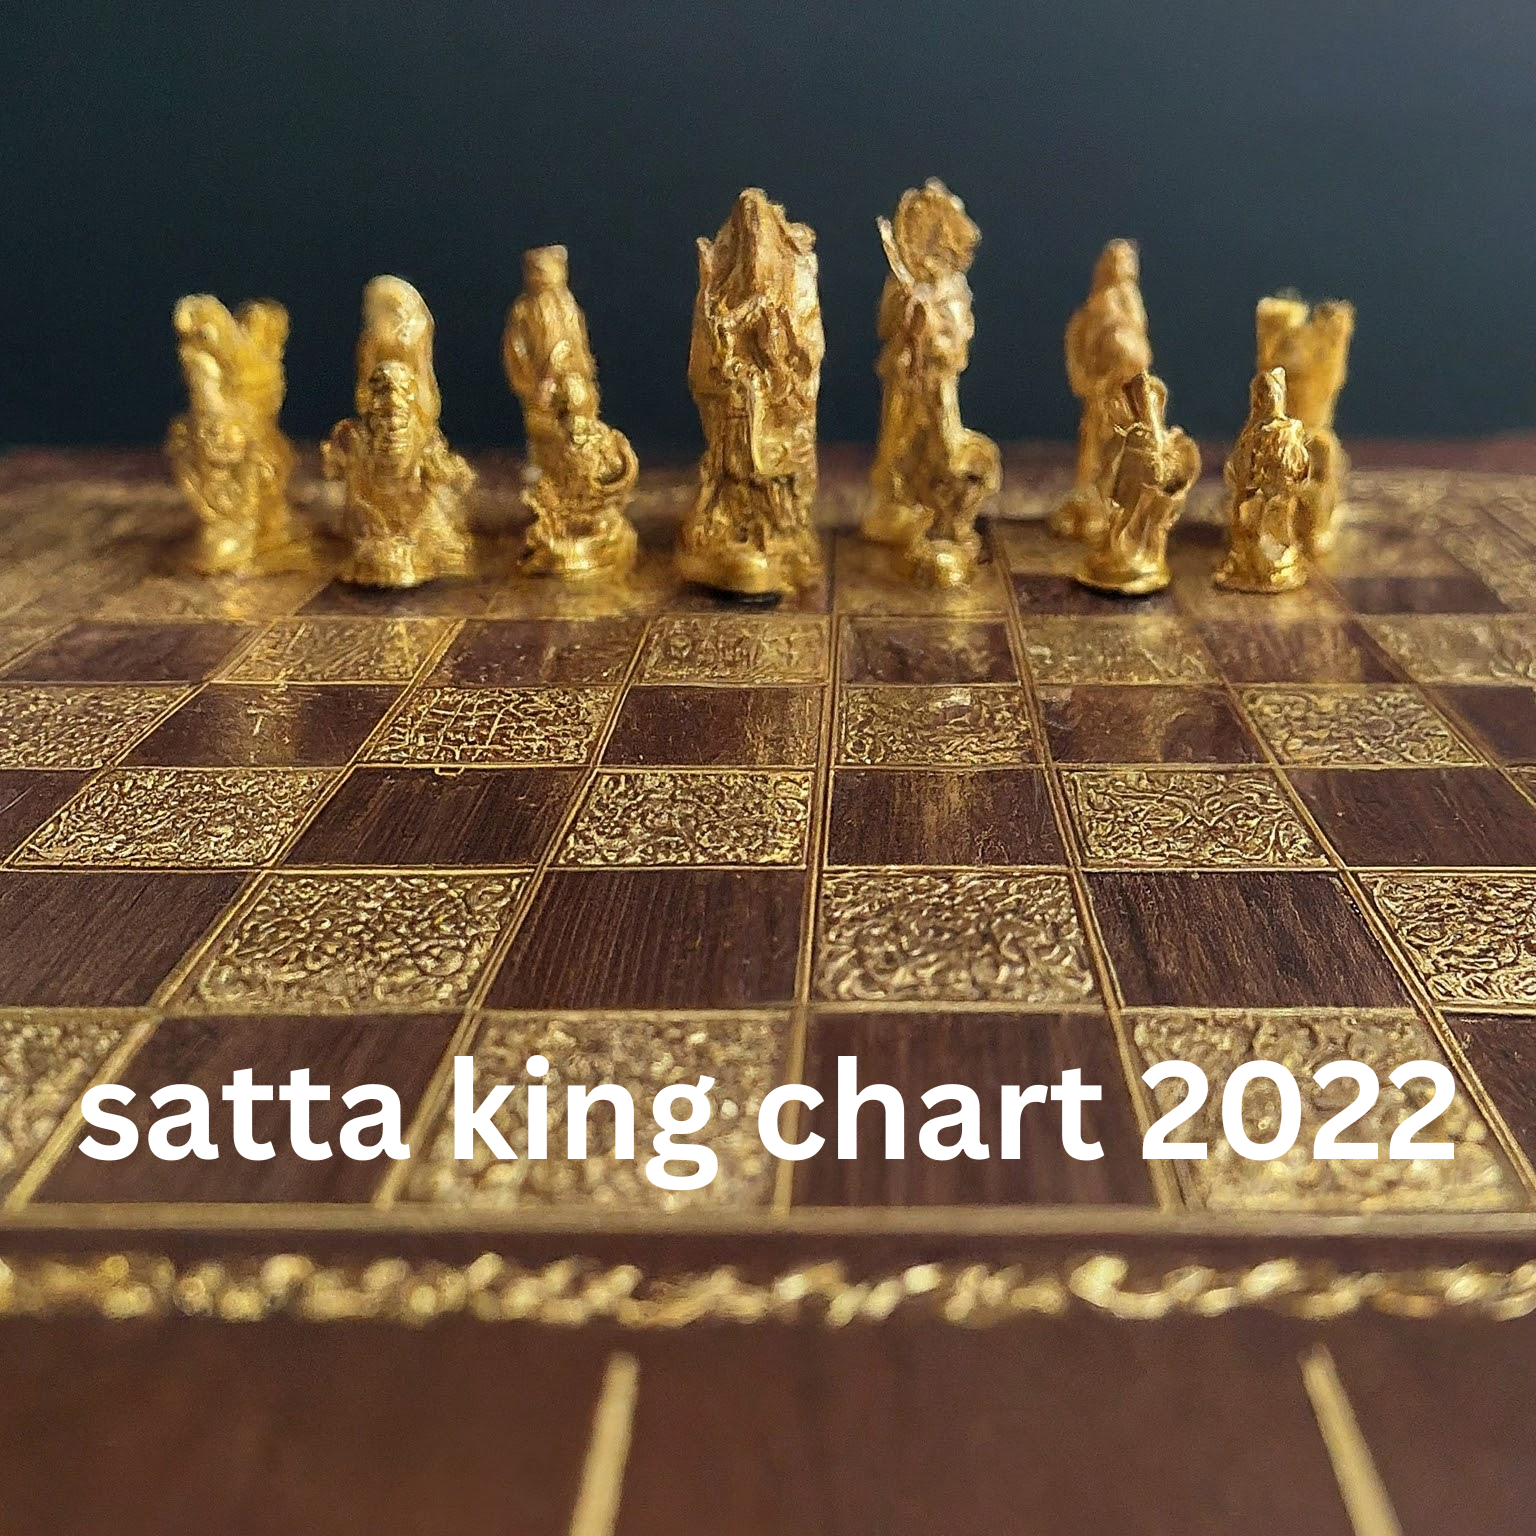 satta king chart 2022